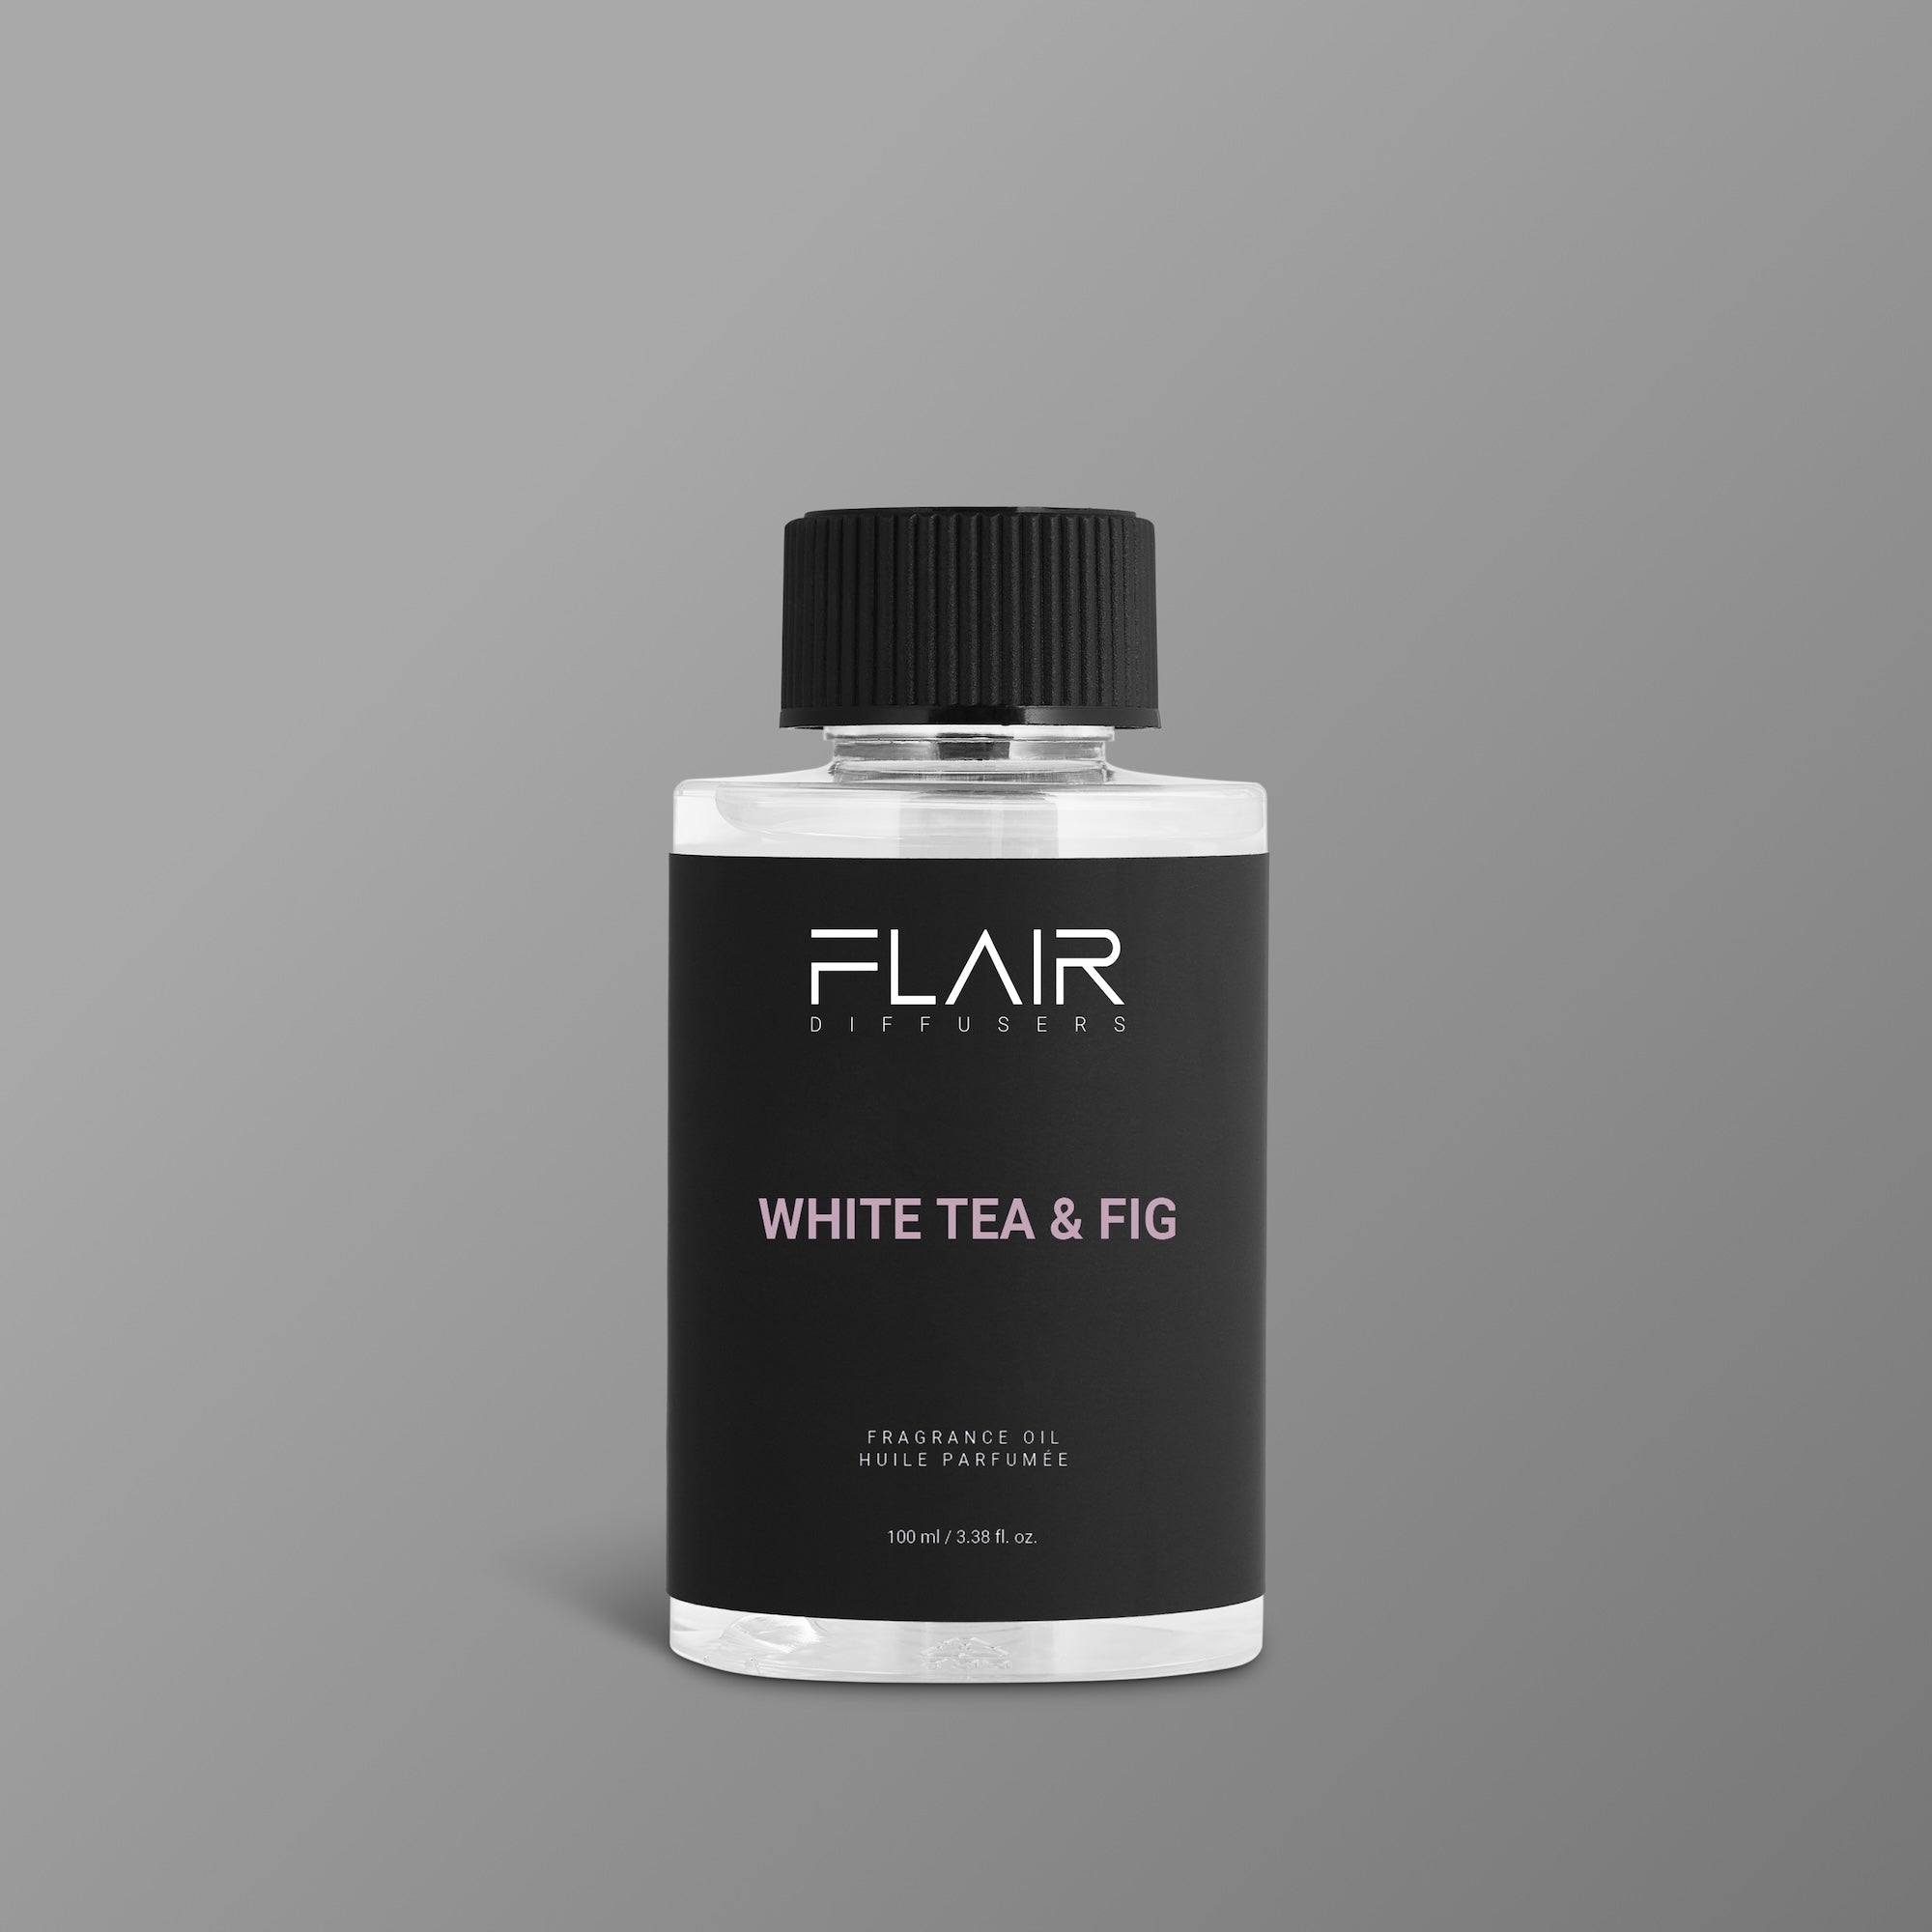 White Tea & Fig